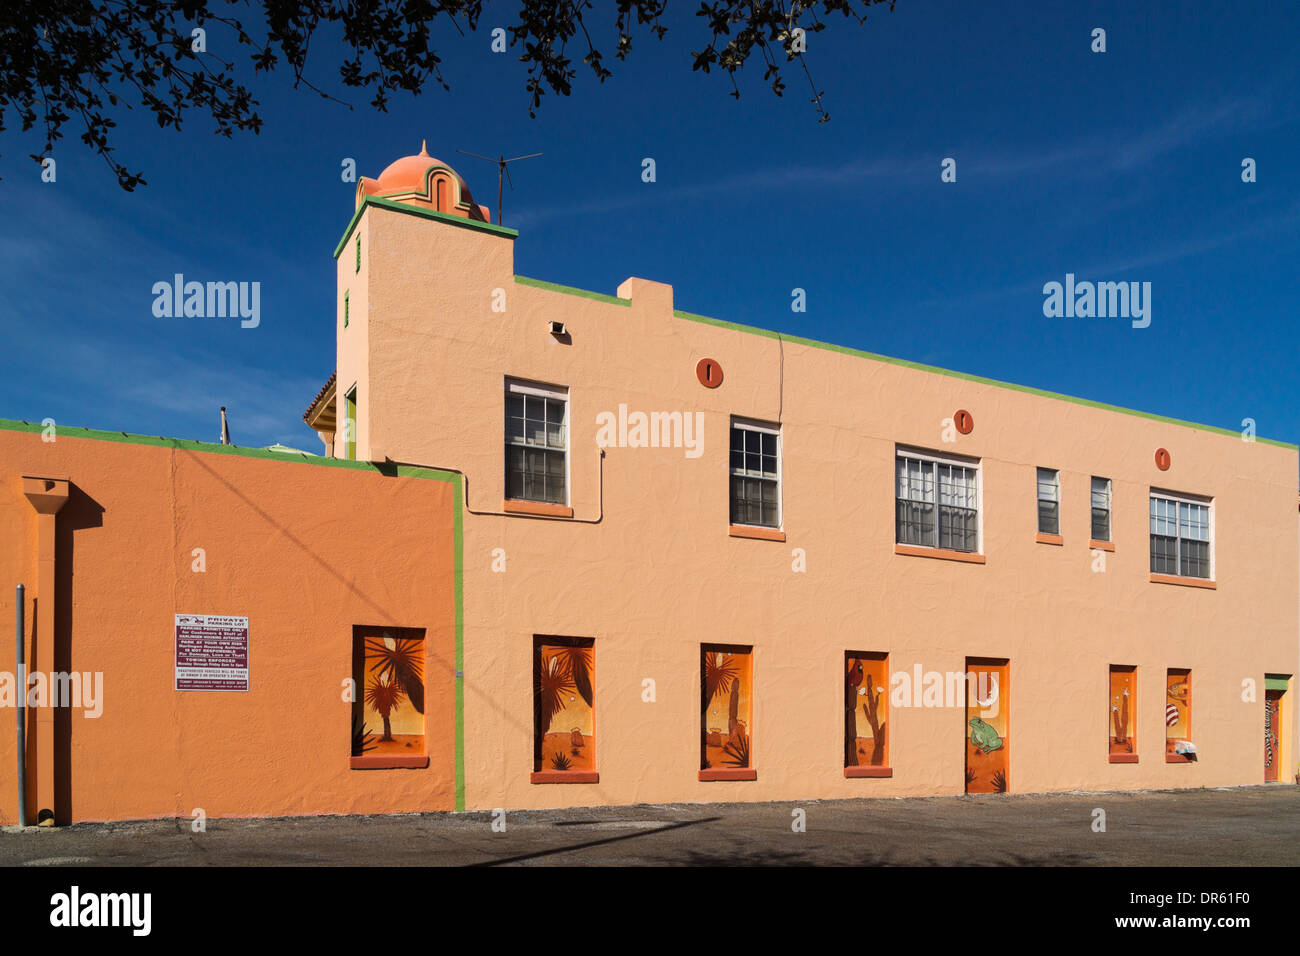 Wandmalereien in der Innenstadt von Harlingen, Texas. Stockfoto